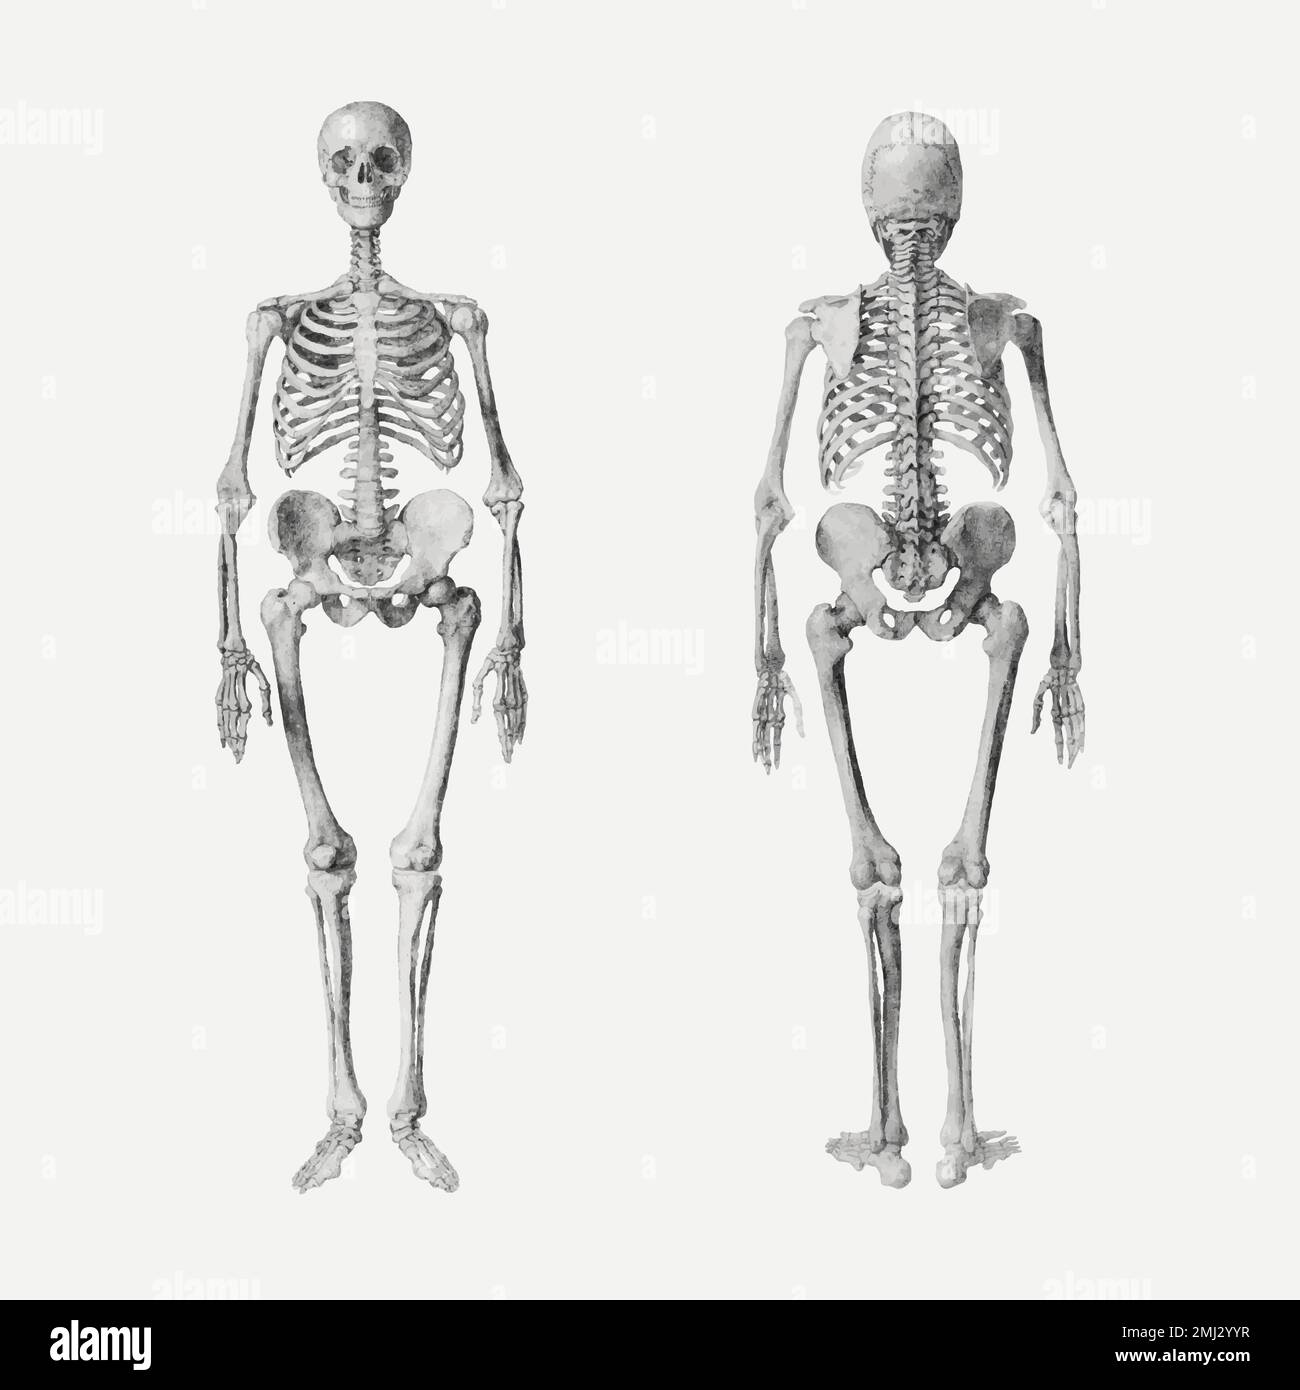 Dessin vectoriel de squelettes humains, remixé à partir d'œuvres de George Stubbs Illustration de Vecteur